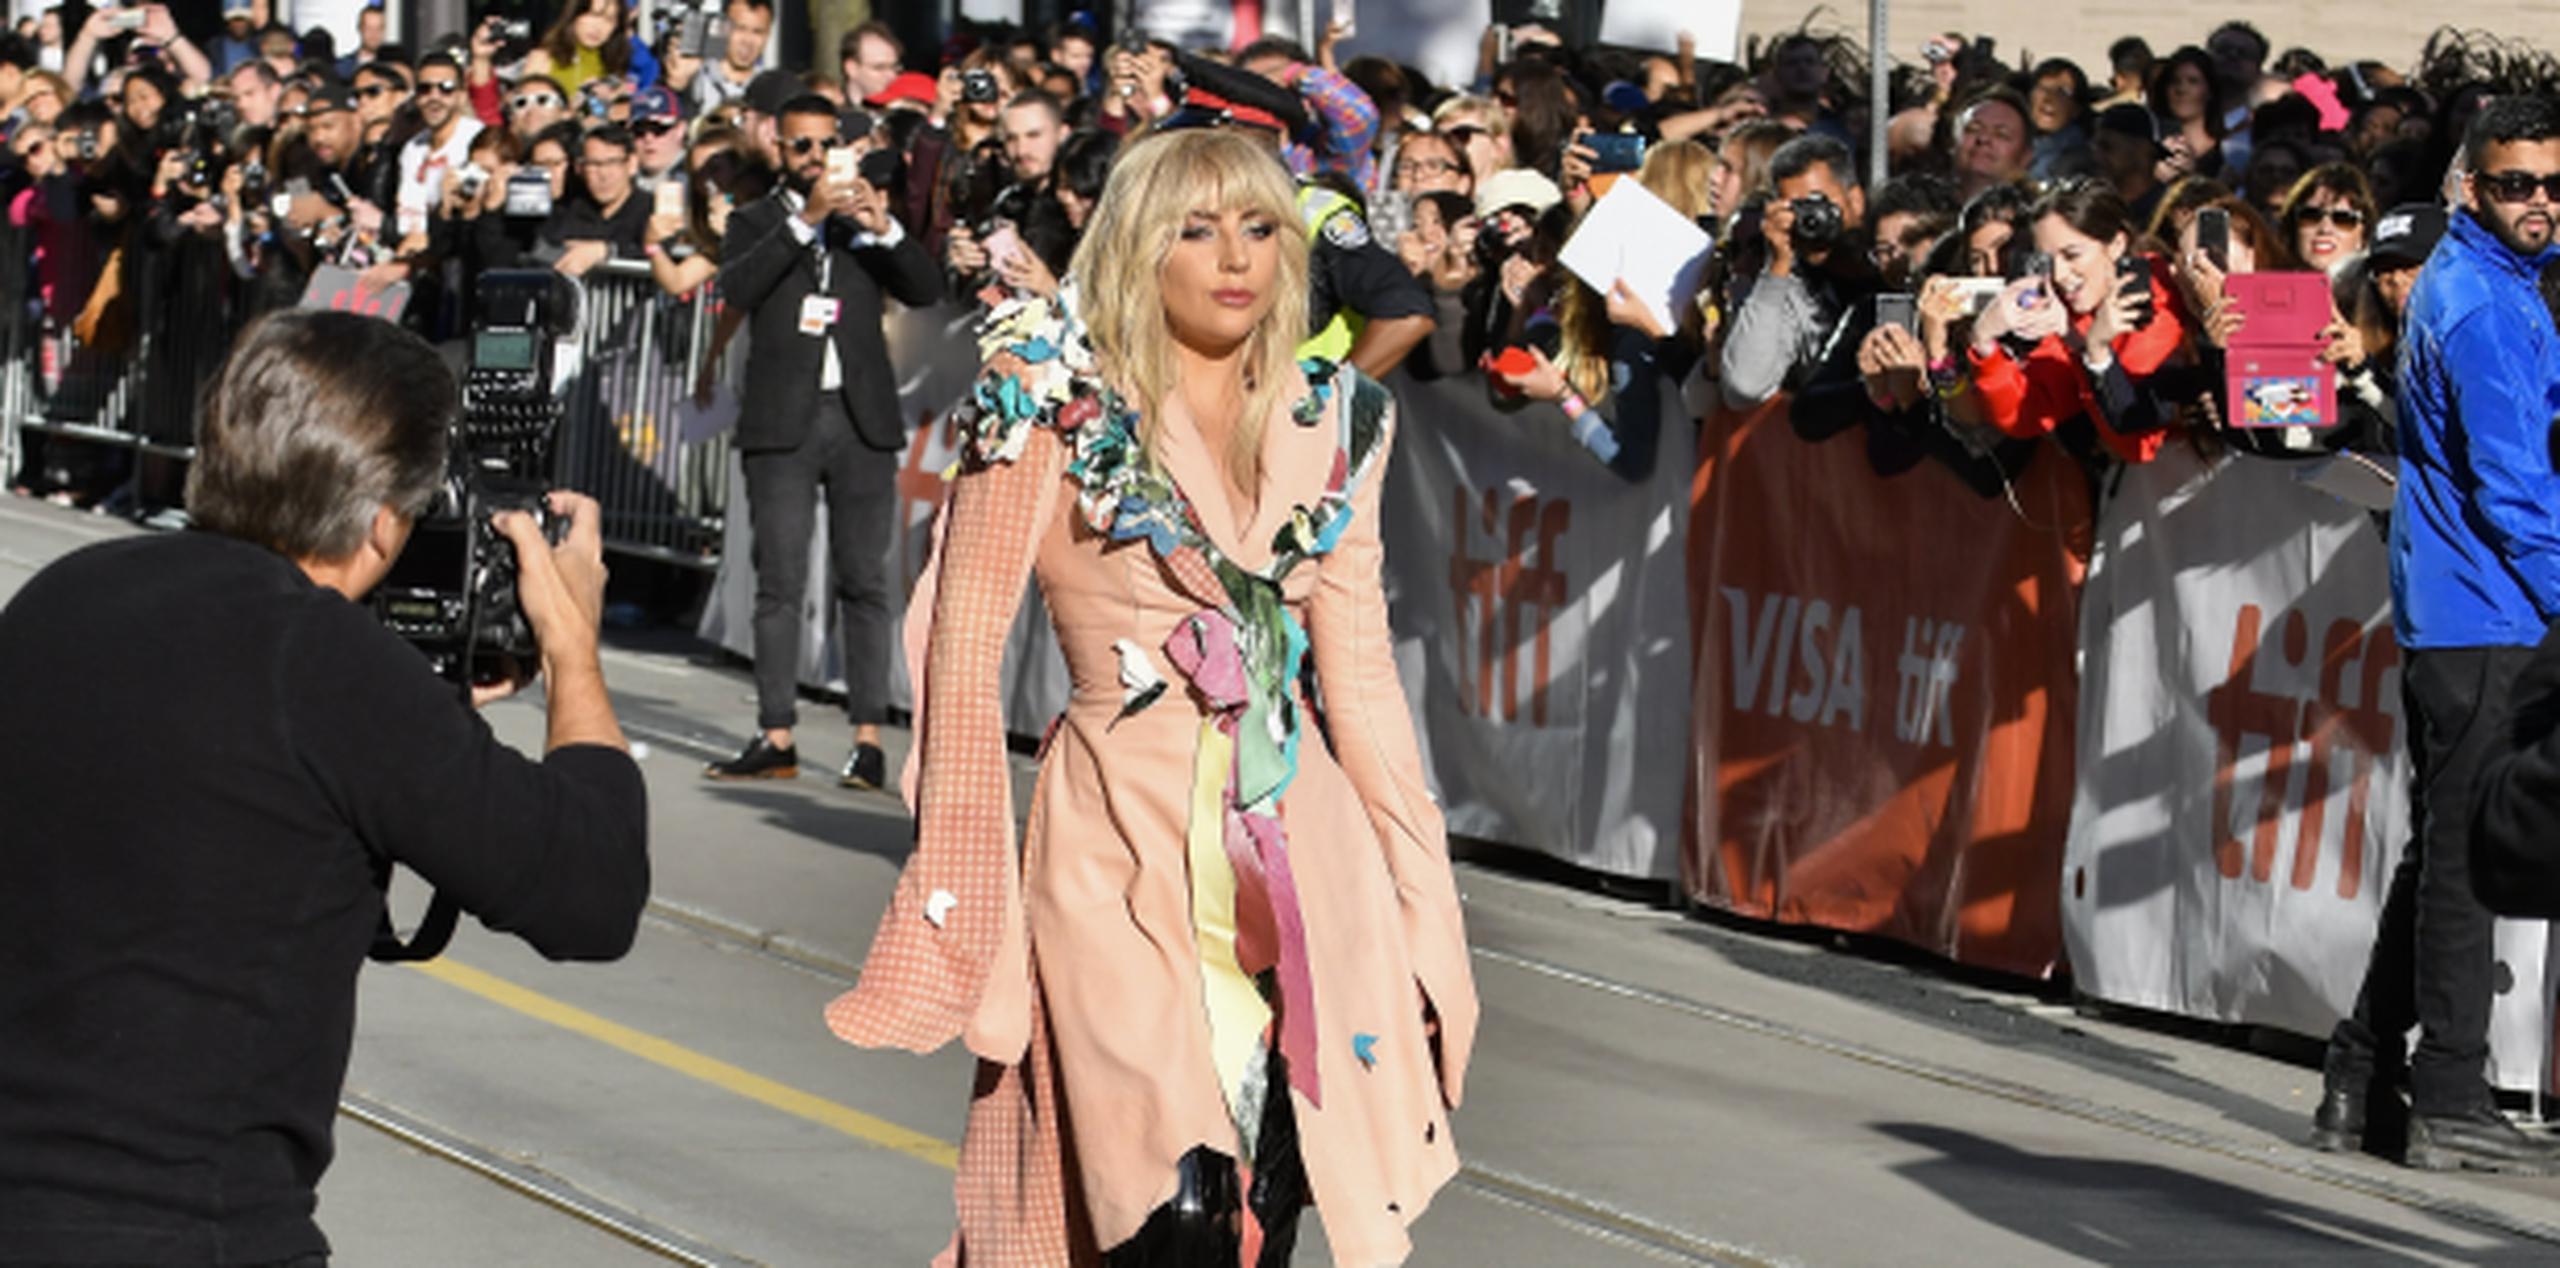 El anuncio de Lady Gaga coincidió con el estreno mundial en TIFF del documental "Gaga: Five Foot Two", que hace referencia a la altura de la artista en el sistema anglosajón. (EFE/EPA/WARREN TODA)